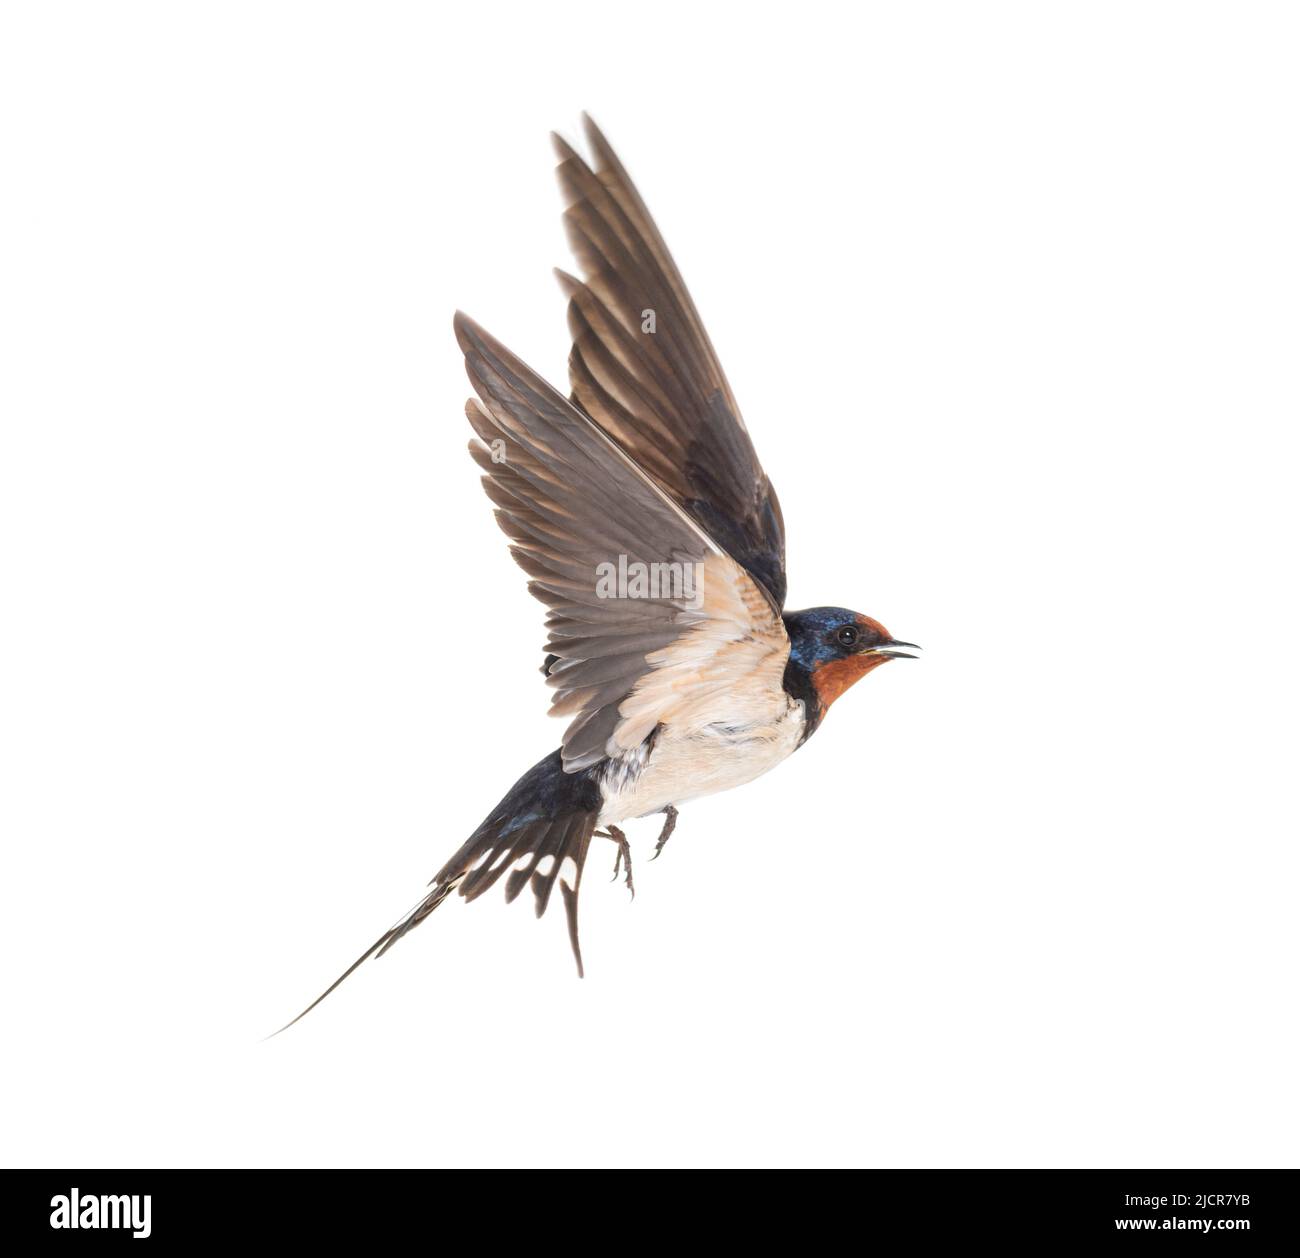 Scheune Swallow Fliegende Flügel ausgebreitet, Vogel, Hirundo rustica, fliegen vor weißem Hintergrund Stockfoto